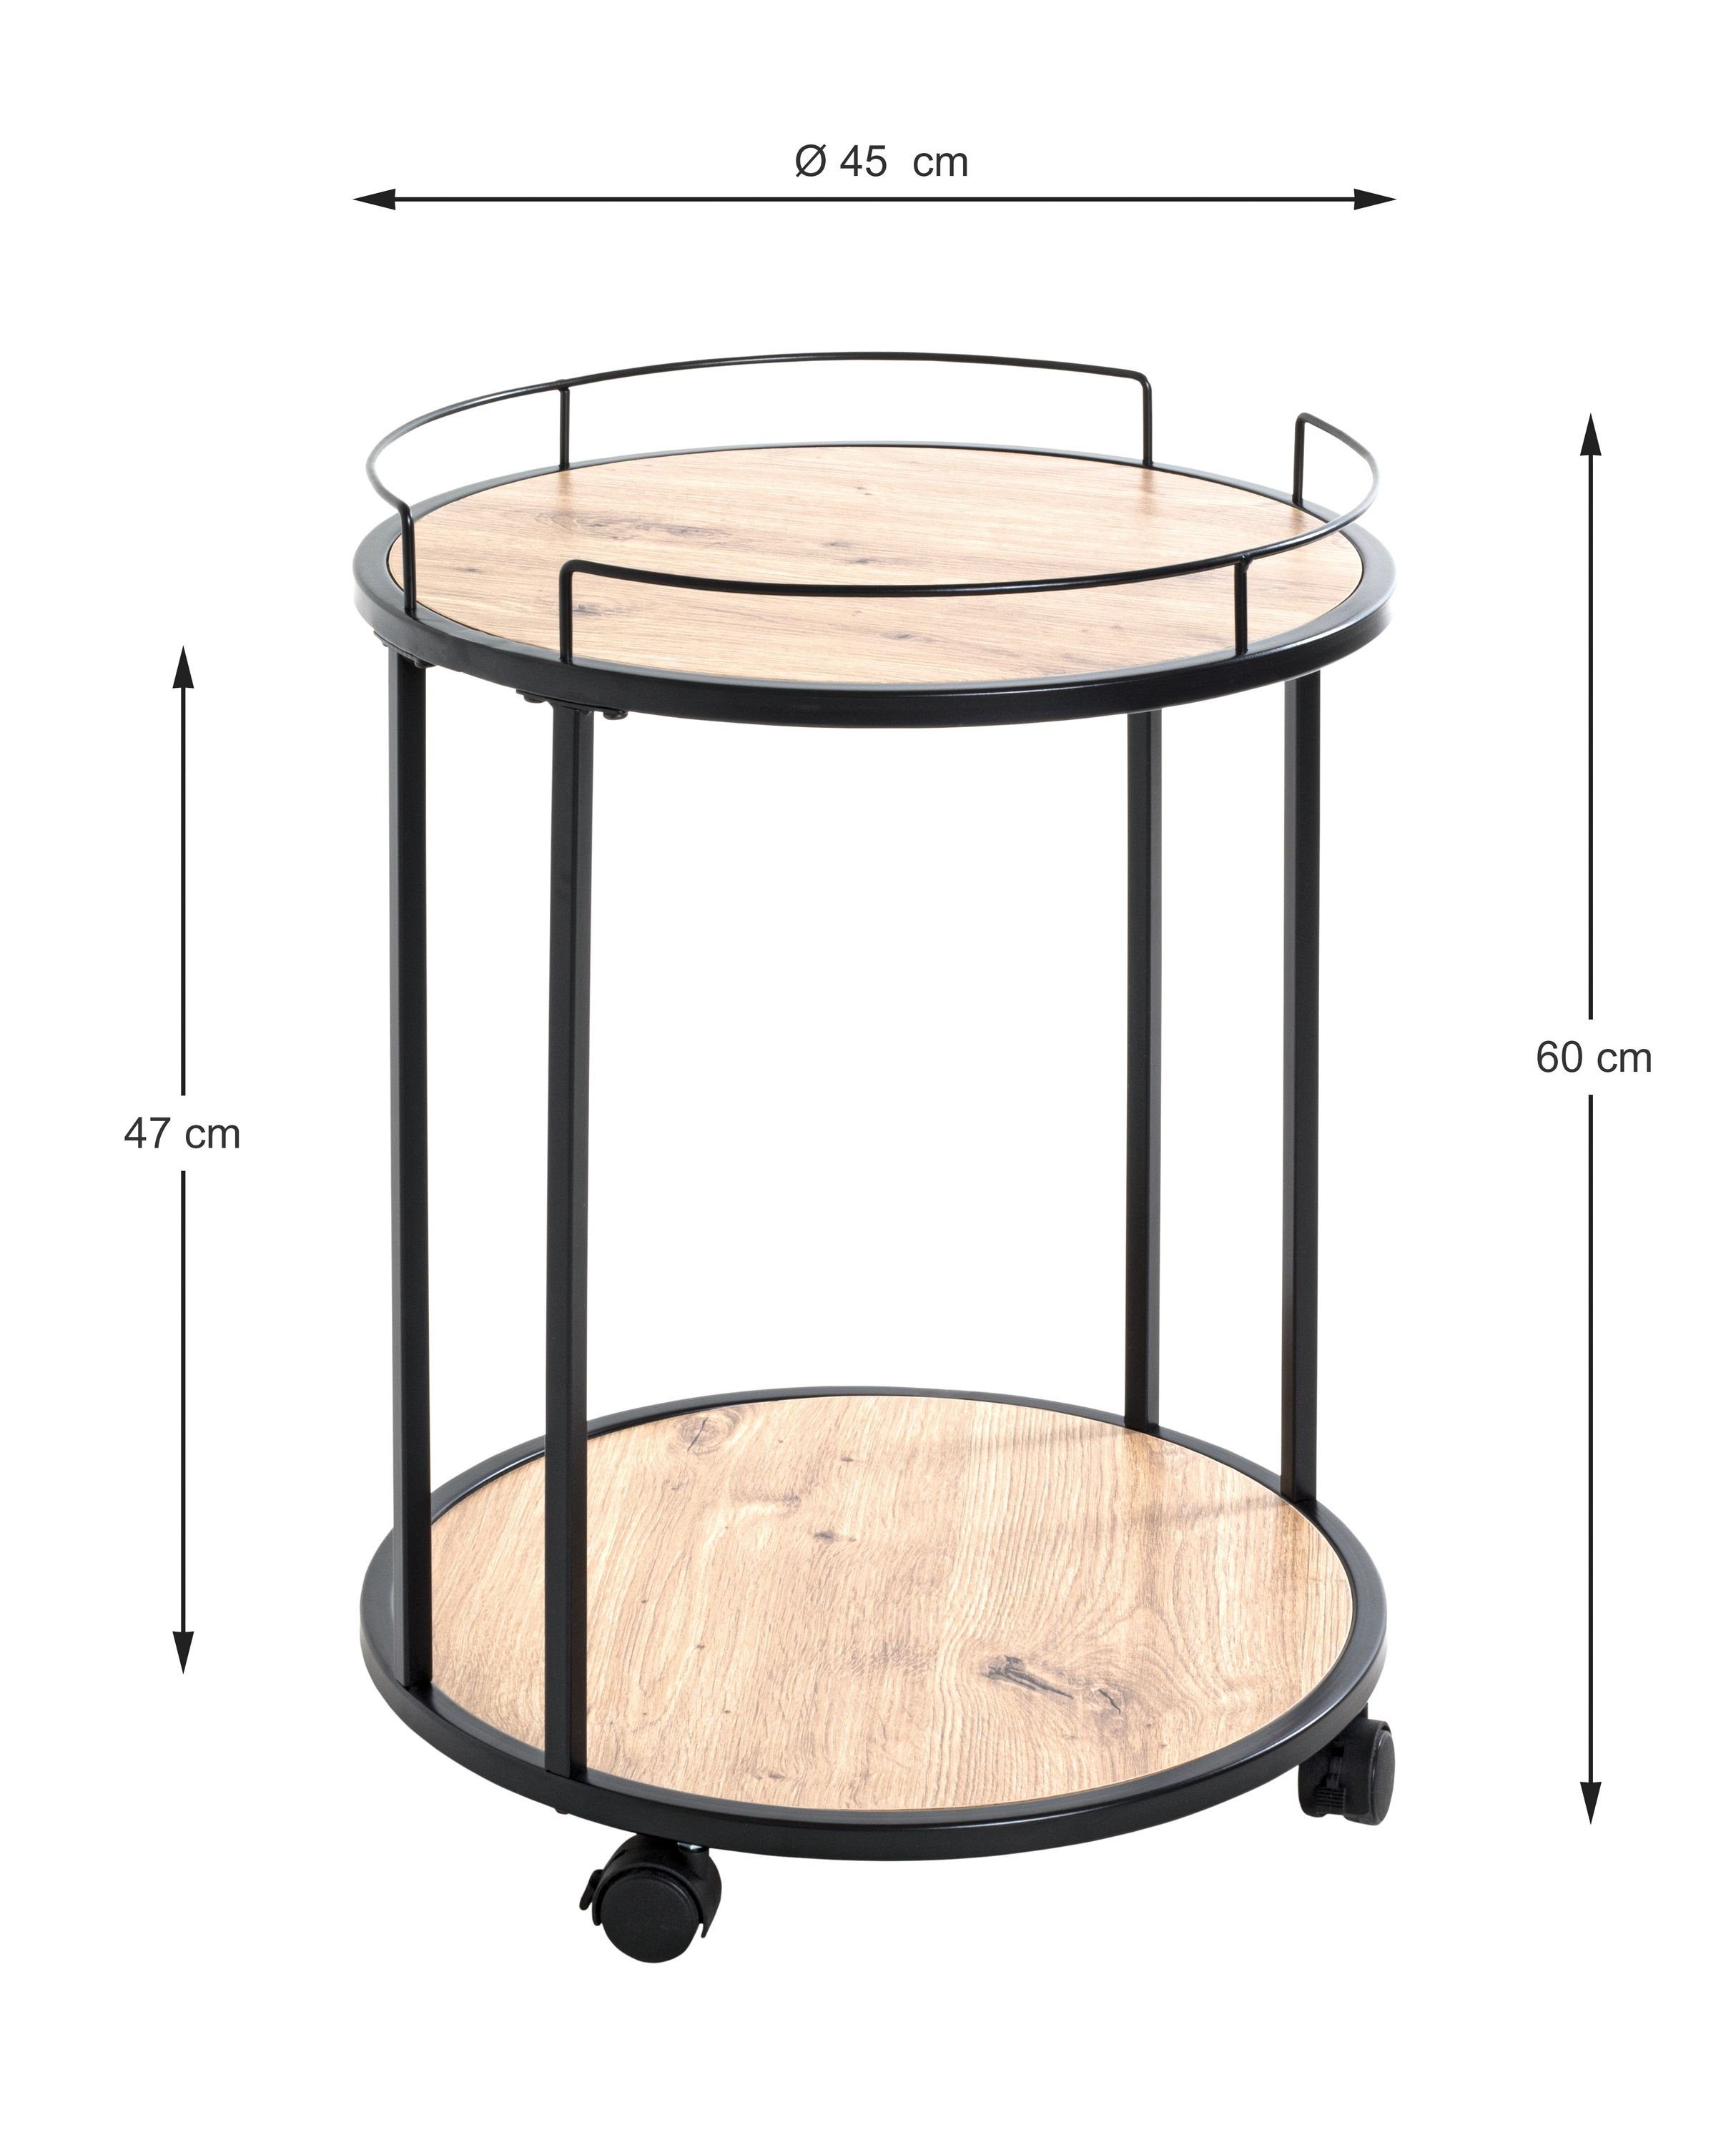 Beistelltisch, HAKU (DH HAKU 45x60 cm) Möbel bunt cm Beistelltisch Beistelltisch 45x60 DH Kaffeetisch